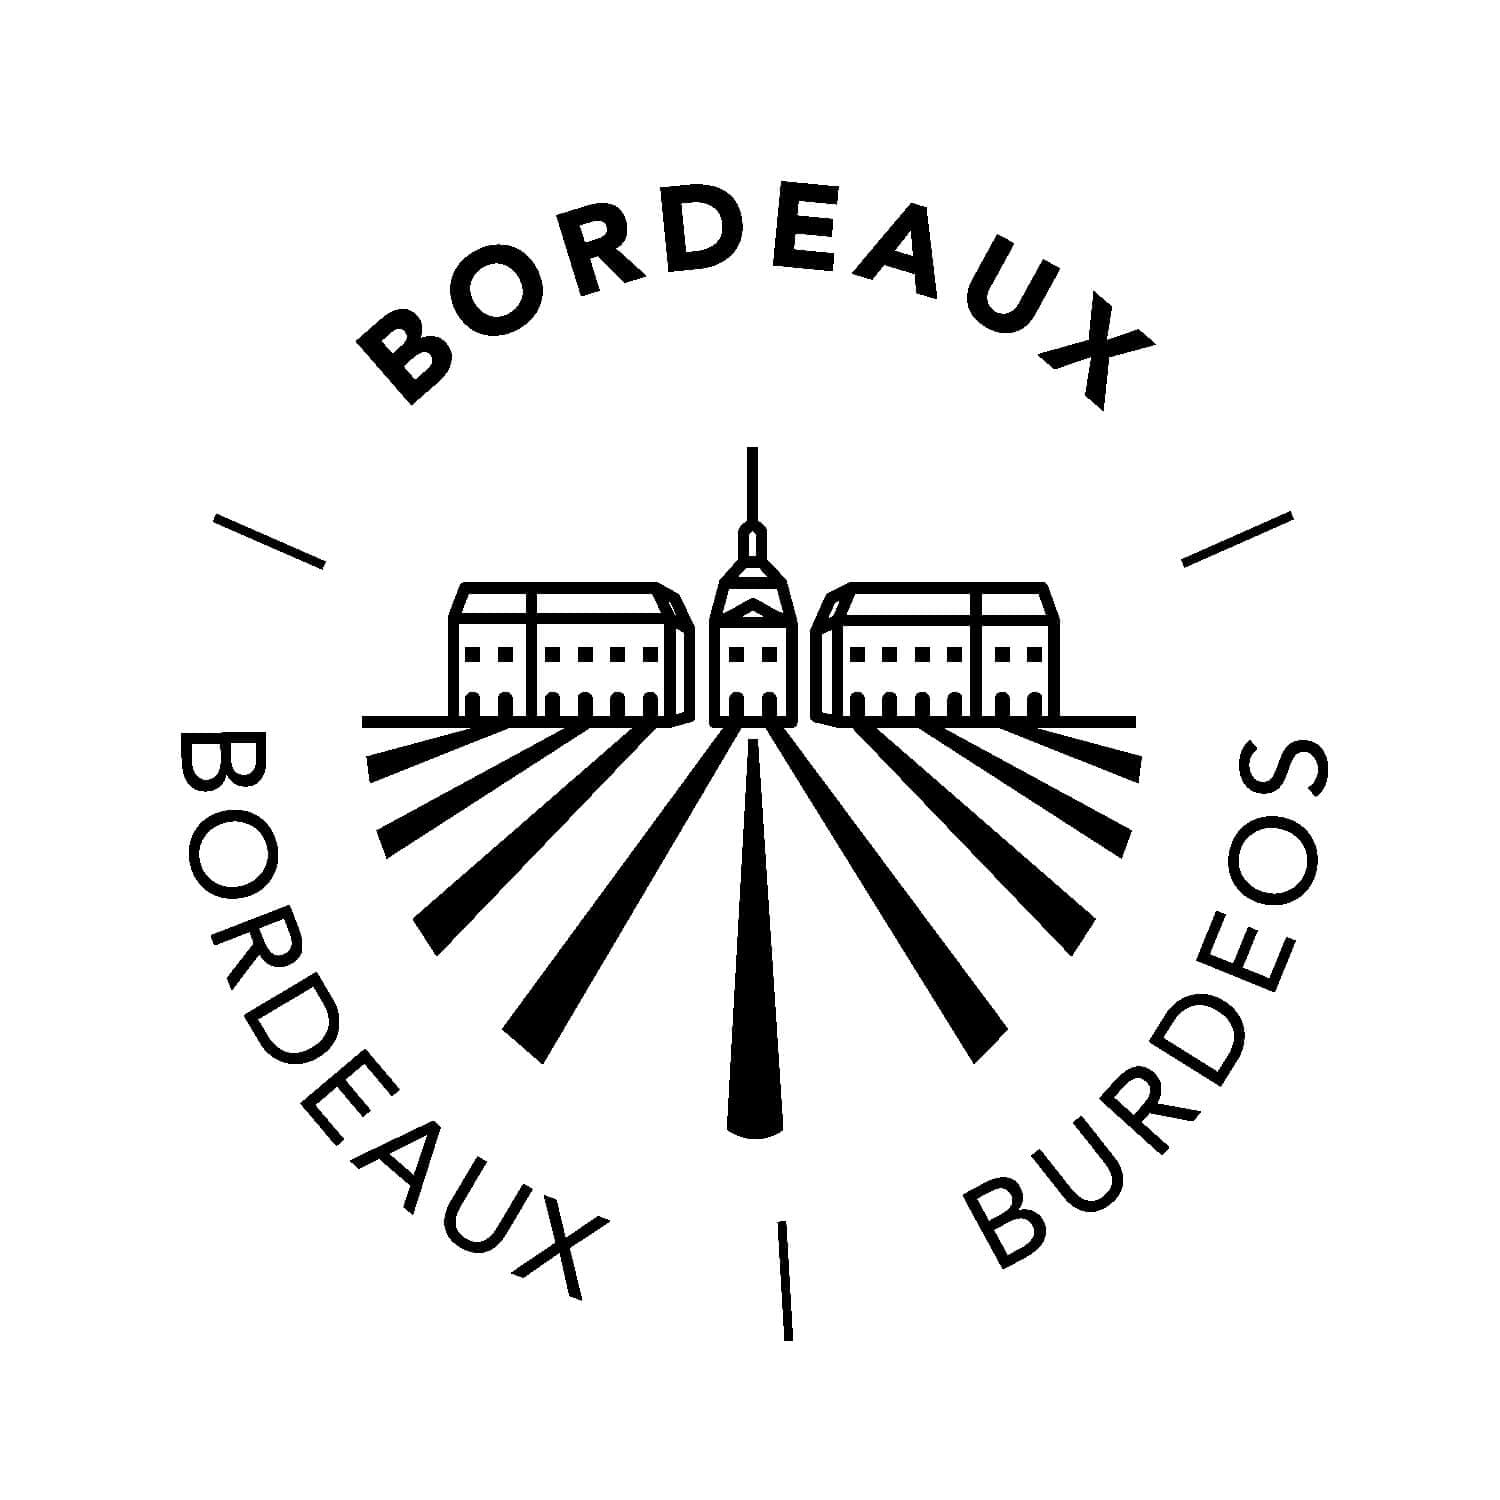 pictogramme Bordeaux dessiné par ichetkar pour la nouvelle signalétique de la cité du vin de bordeaux